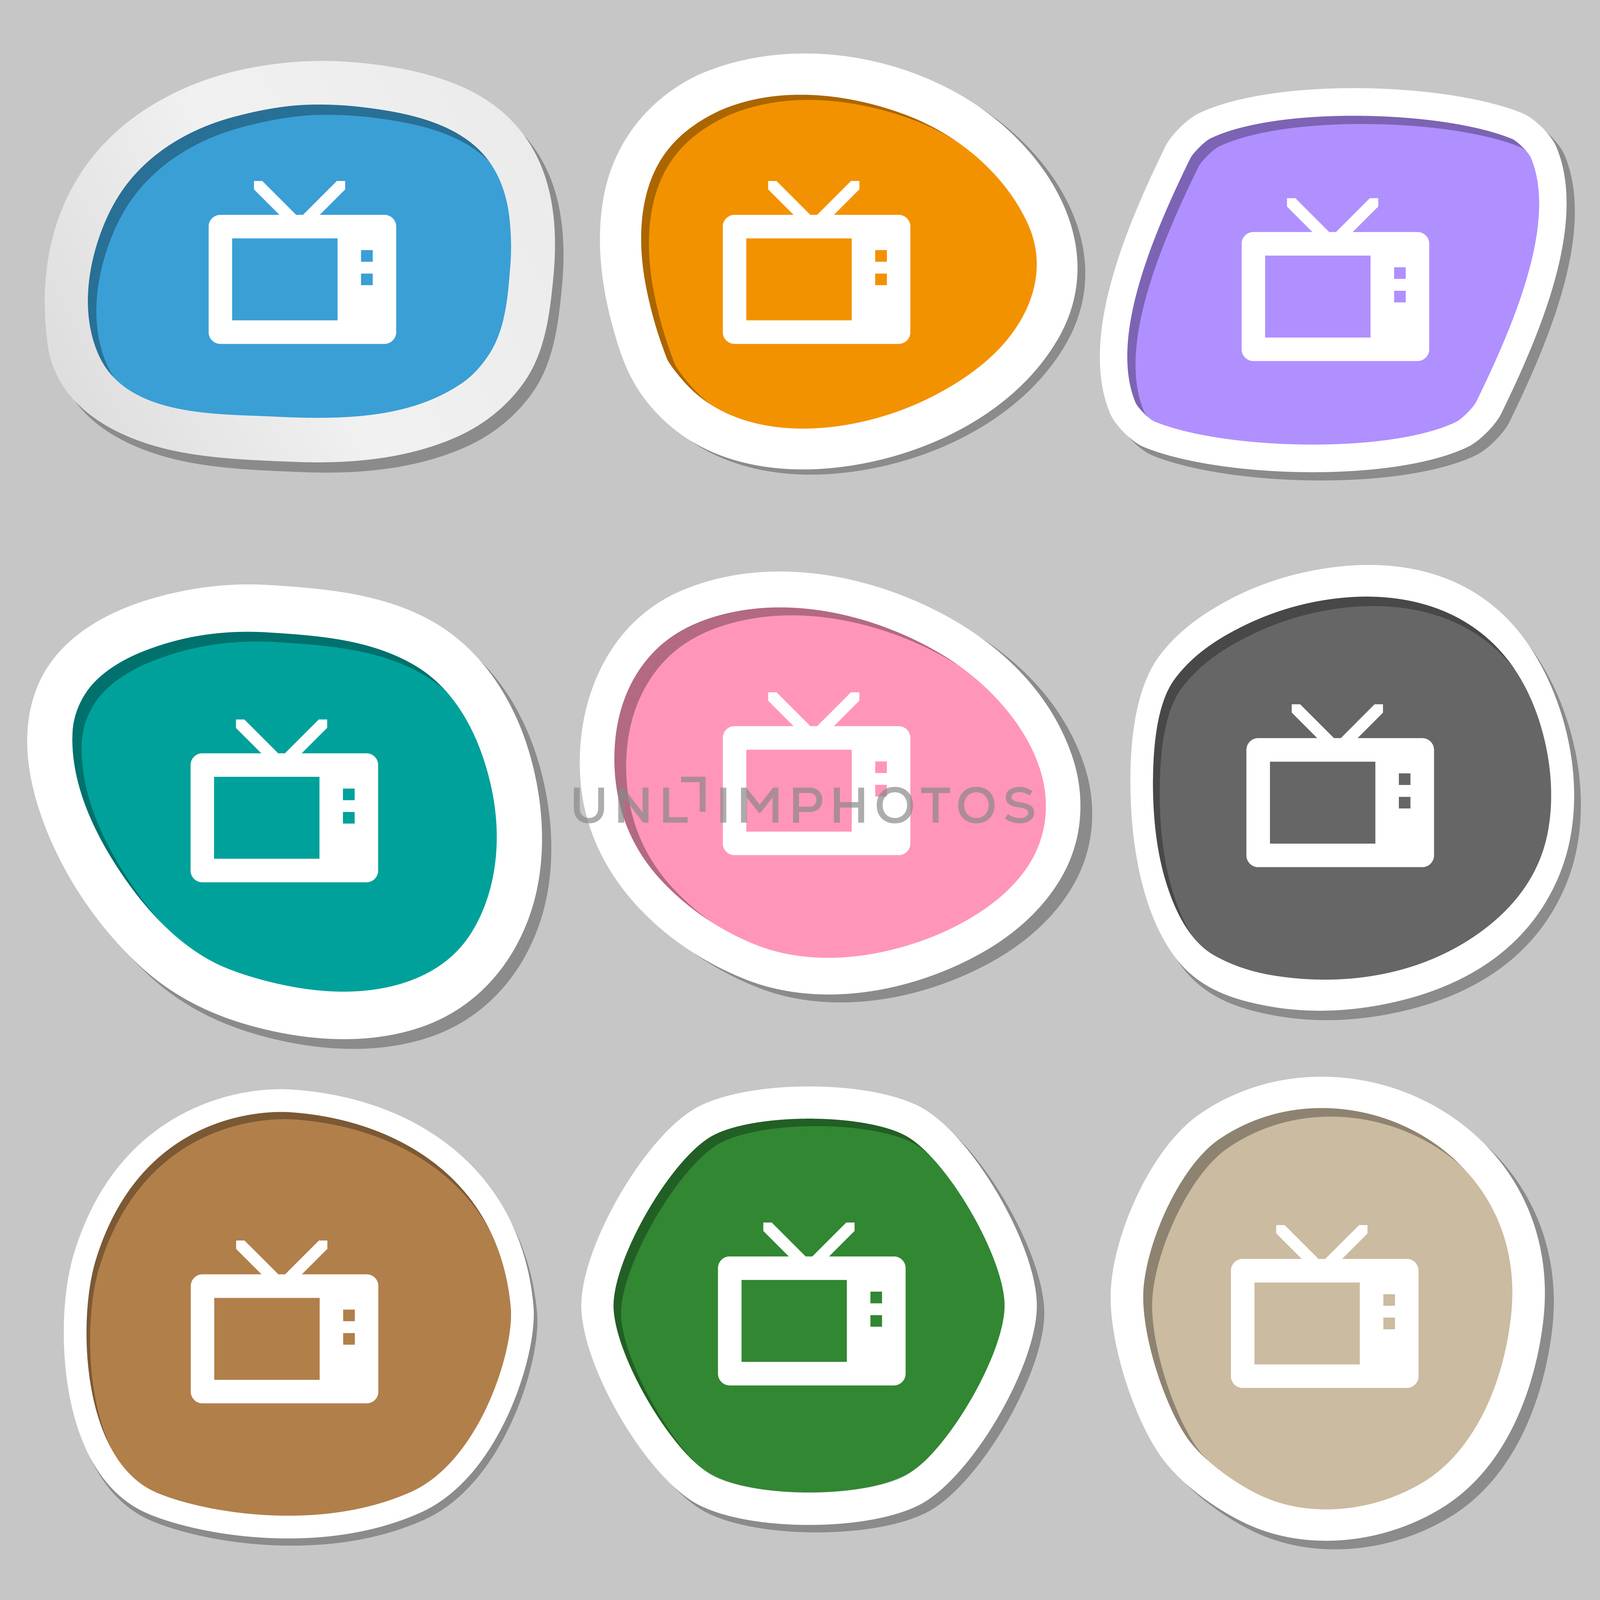 Retro TV mode icon symbols. Multicolored paper stickers. illustration